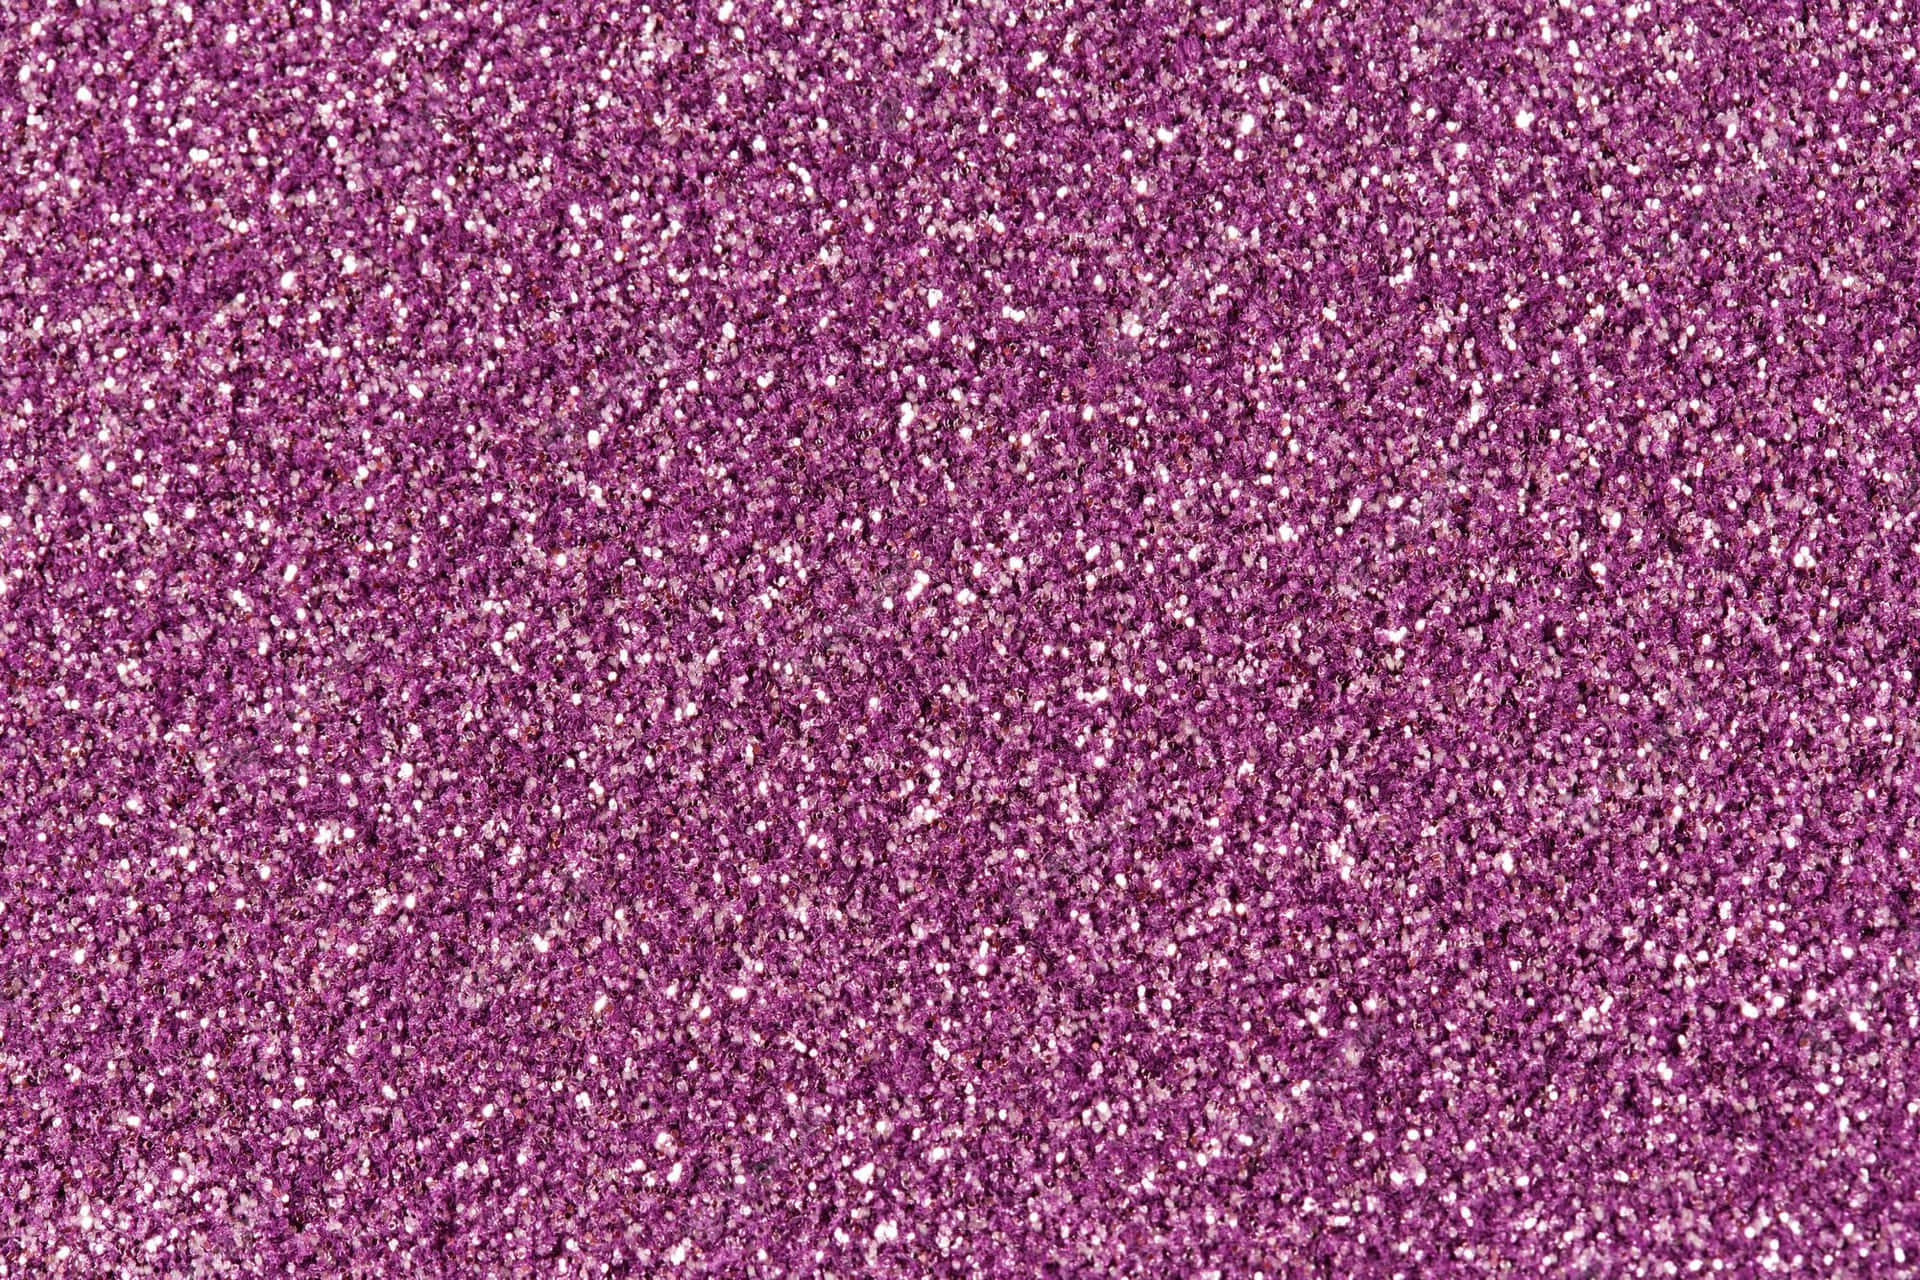 Fondode Purpurina De Alta Resolución En Color Púrpura.